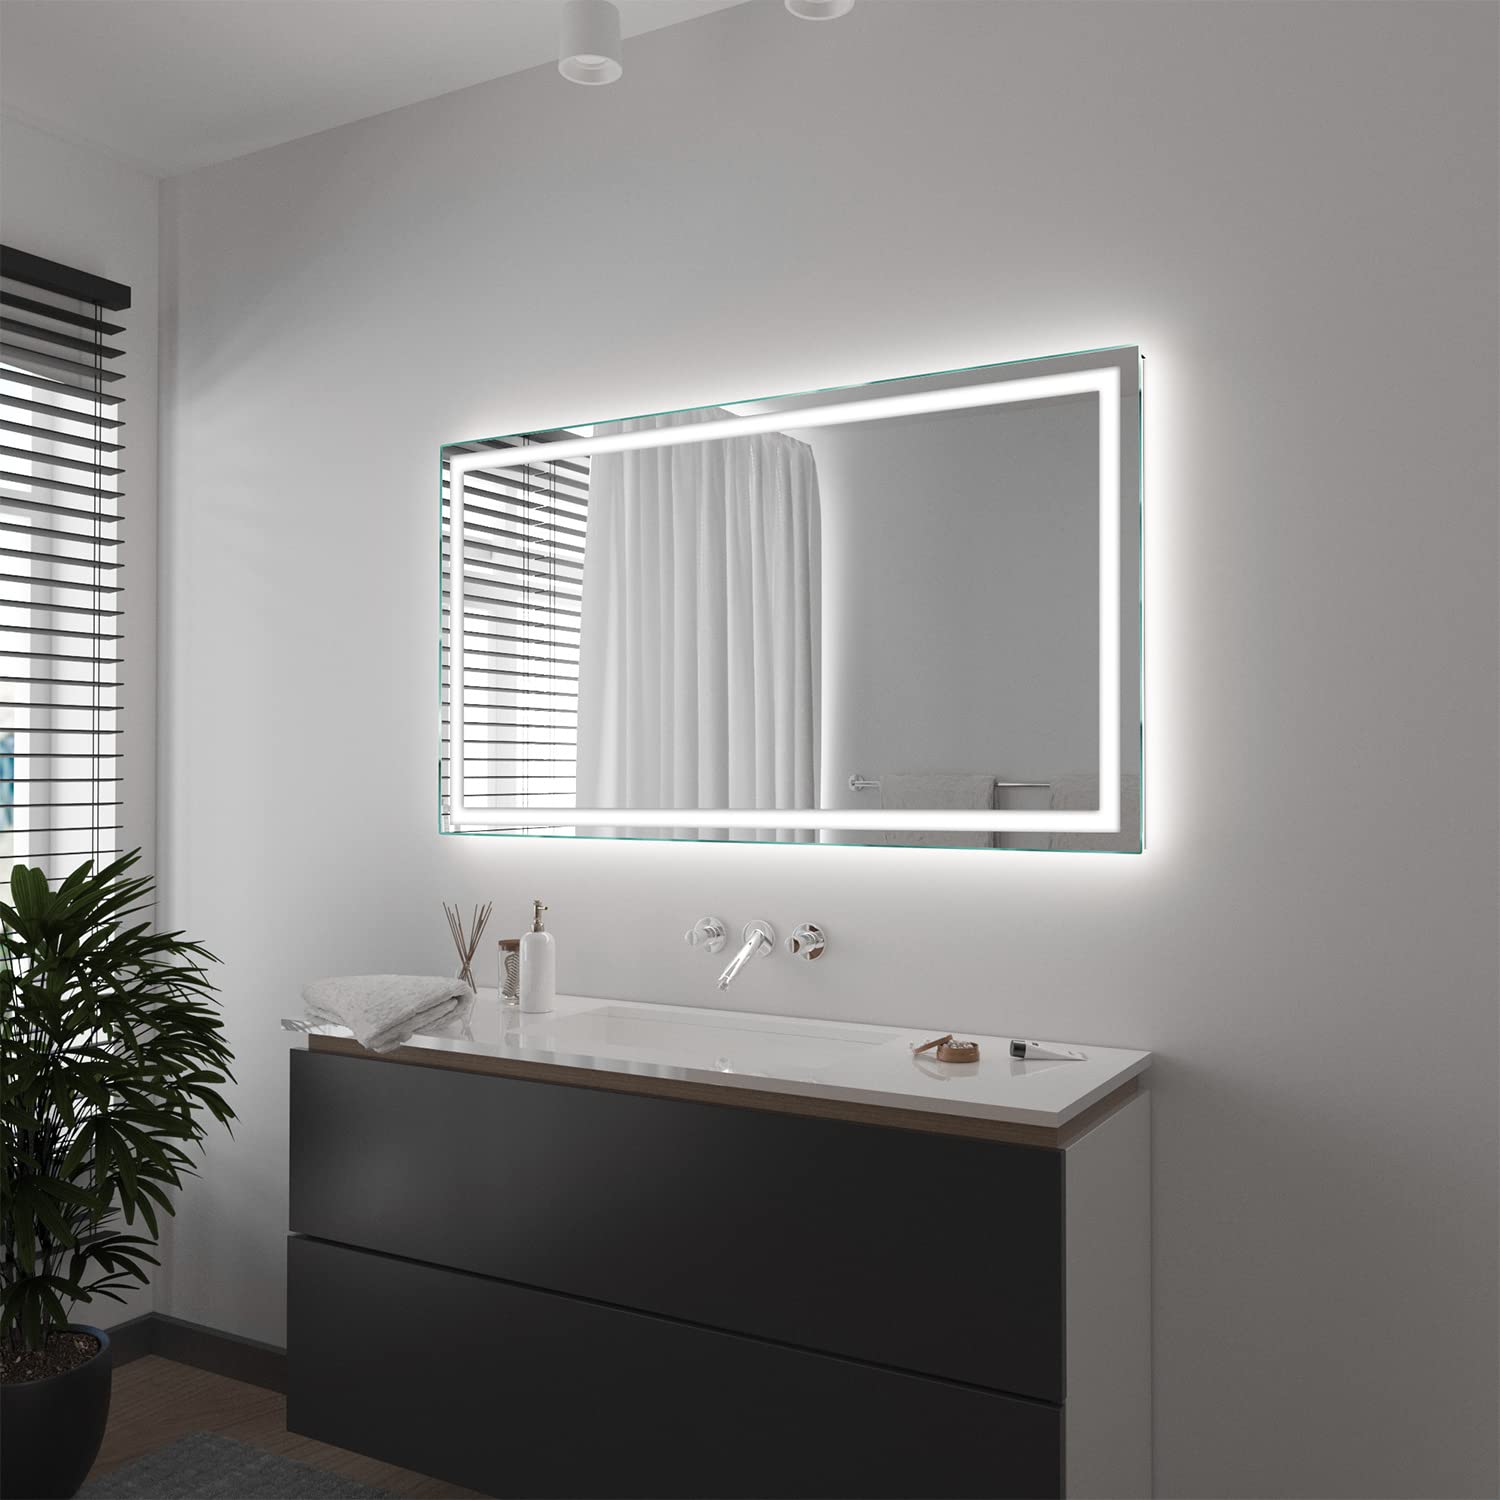 SARAR Wandspiegel mit rundum LED-Beleuchtung 150x80 cm Made in Germany Toulon eckiger Badspiegel Spiegel mit Beleuchtung Badezimmerspiegel